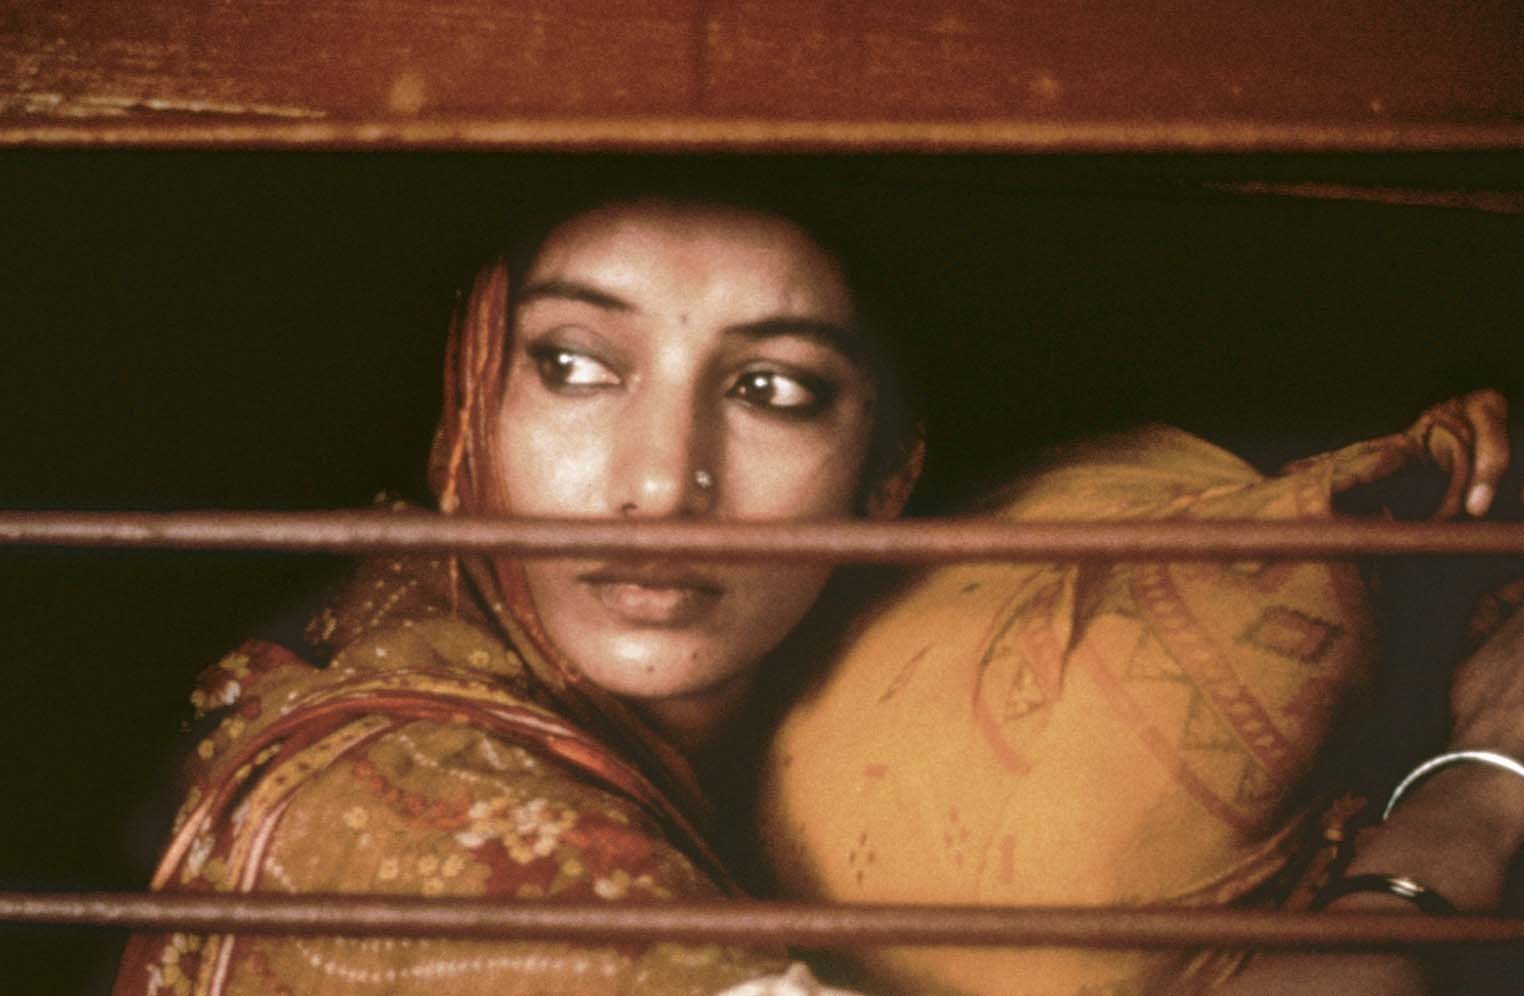 Still of Shabana Azmi in City of Joy (1992)